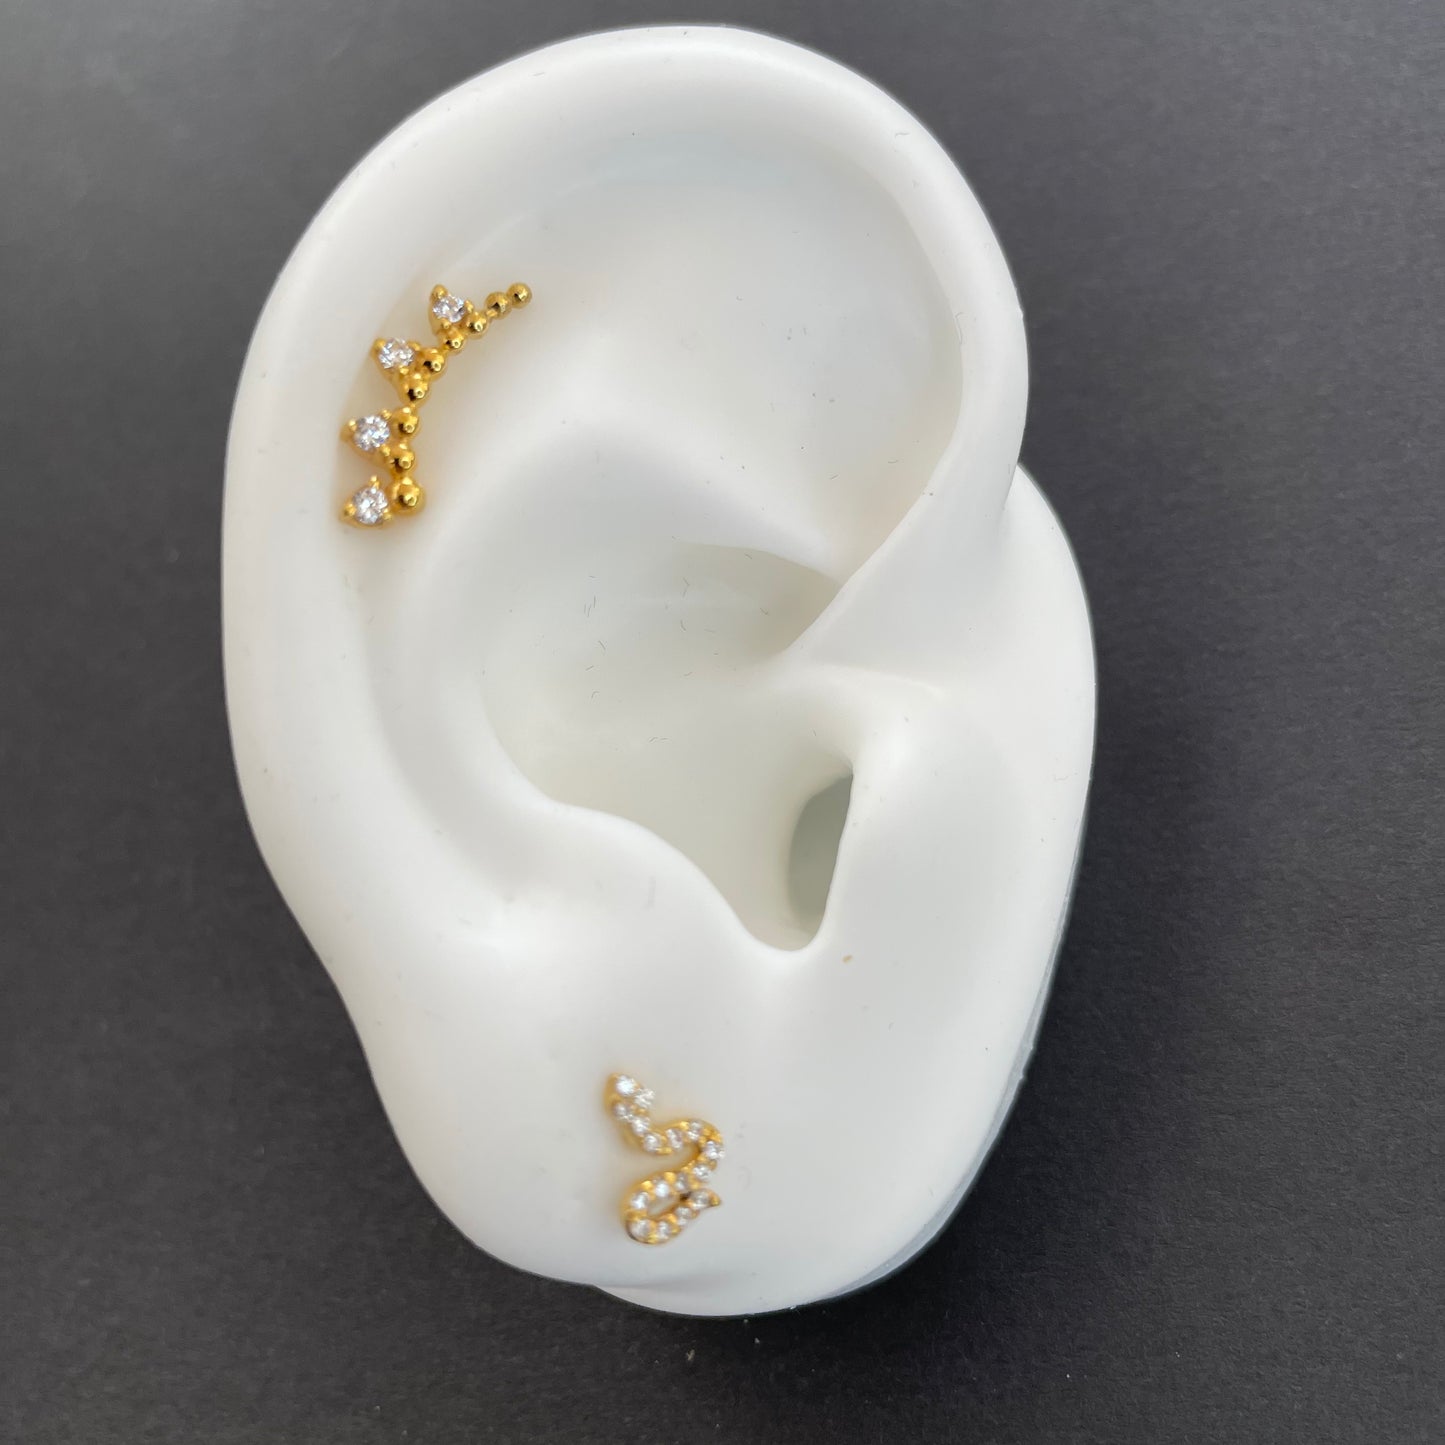 4 Diamonds Ear Climber Stud Earrings - - Jewelry - Goldie Paris Jewelry - Earring